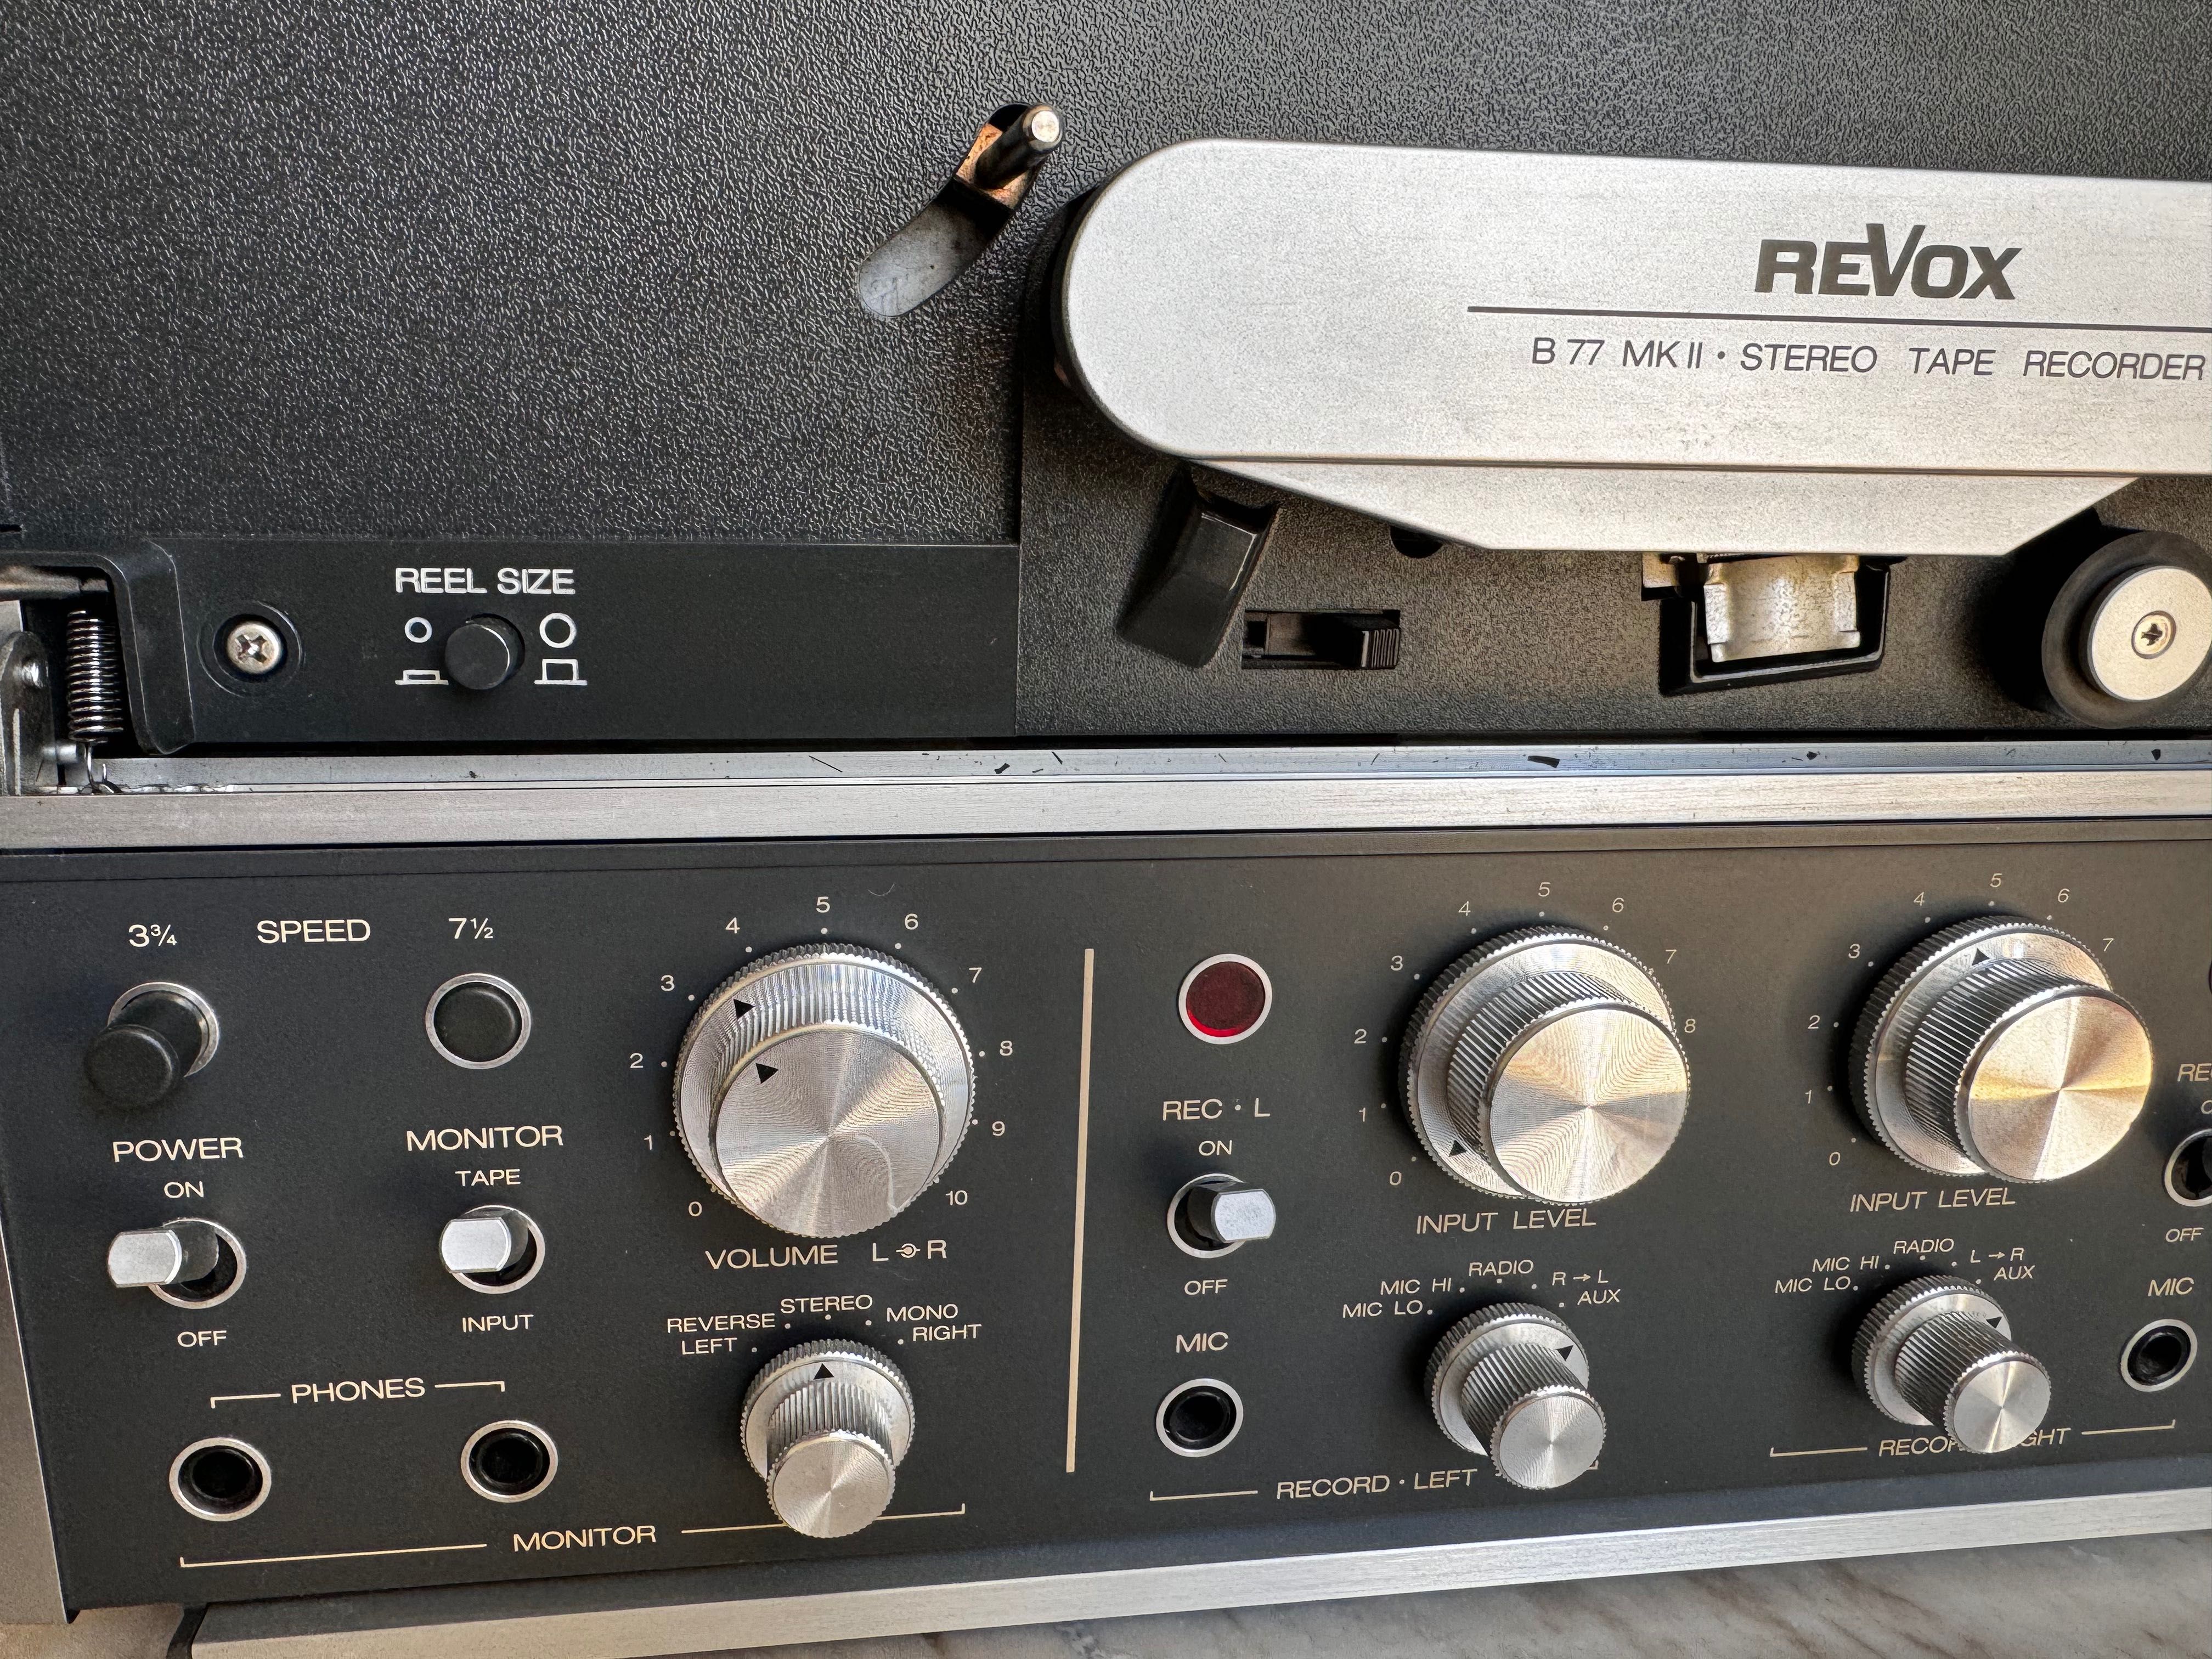 ReVox B77 magnetofon szpulowy, dwuścieżkowy, stereo. HiFi